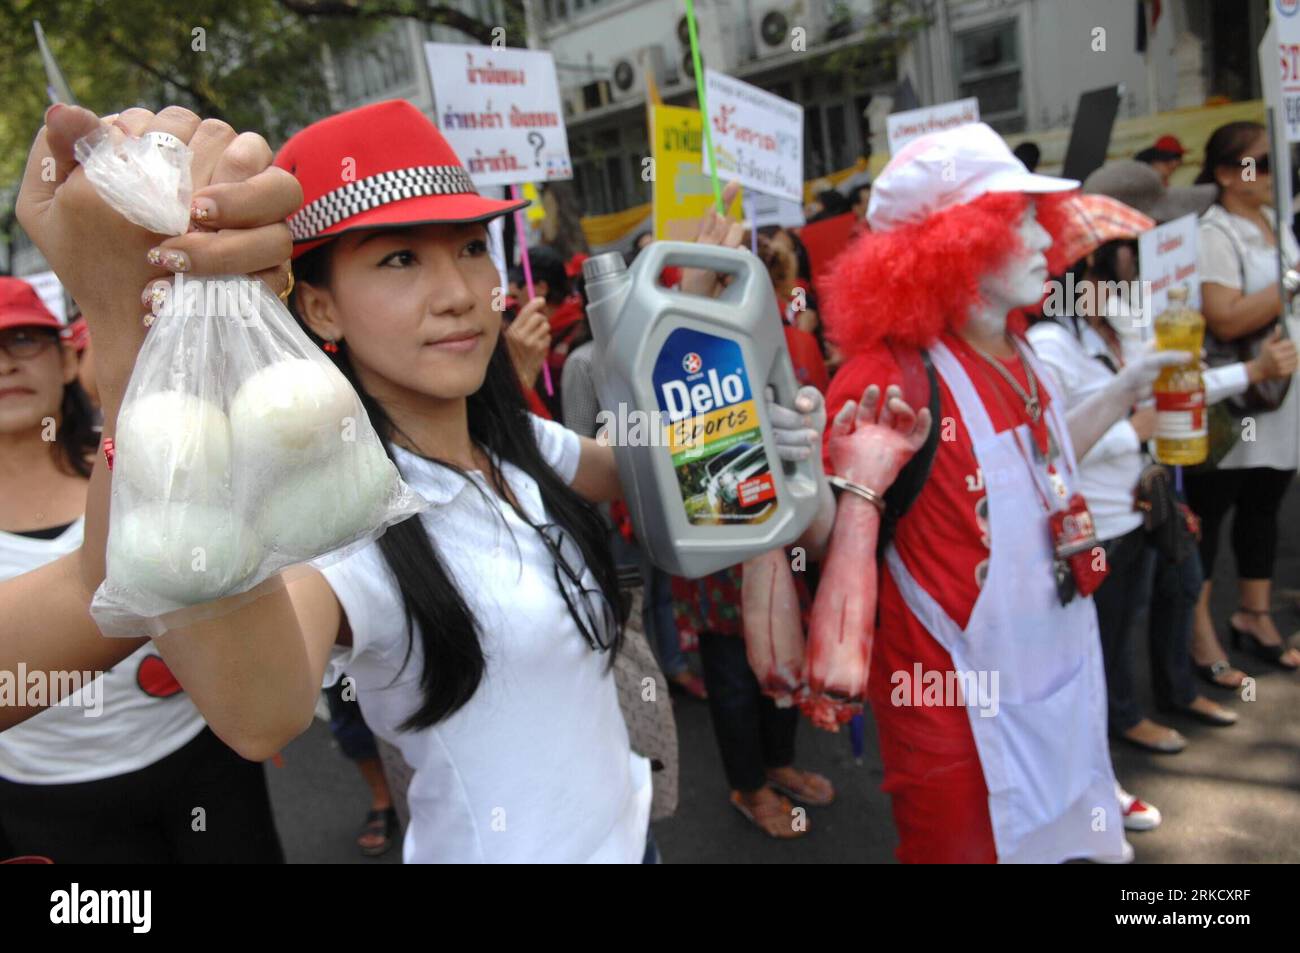 Bildnummer: 54825694 Datum: 17.01.2011 Copyright: imago/Xinhua (110117) -- BANGKOK, 17. Januar 2011(Xinhua) -- Mitglieder von roten Hemden nehmen am 17. Januar 2011 an einer Kundgebung in Bangkok, der Hauptstadt Thailands, Teil. Etwa 50 regierungsfeindliche Demonstranten oder rote Hemden versammelten sich am Montag vor dem Regierungsgebäude und forderten die Regierung auf, die Verbrauchsteuer auf Treibstoff zu senken. (Xinhua/Rachen Sageamsak) THAILAND-BANGKOK-RED SHIRT-Protest PUBLICATIONxNOTxINxCHN Politik Gesellschaft Demo Protest rote Hemden kbdig xub 2011 quer Premiere o0 Rothemden Bildnummer 54825694 Datum 17 01 2011 Copyright Imago XINHUA Bangkok Jan 17 Stockfoto